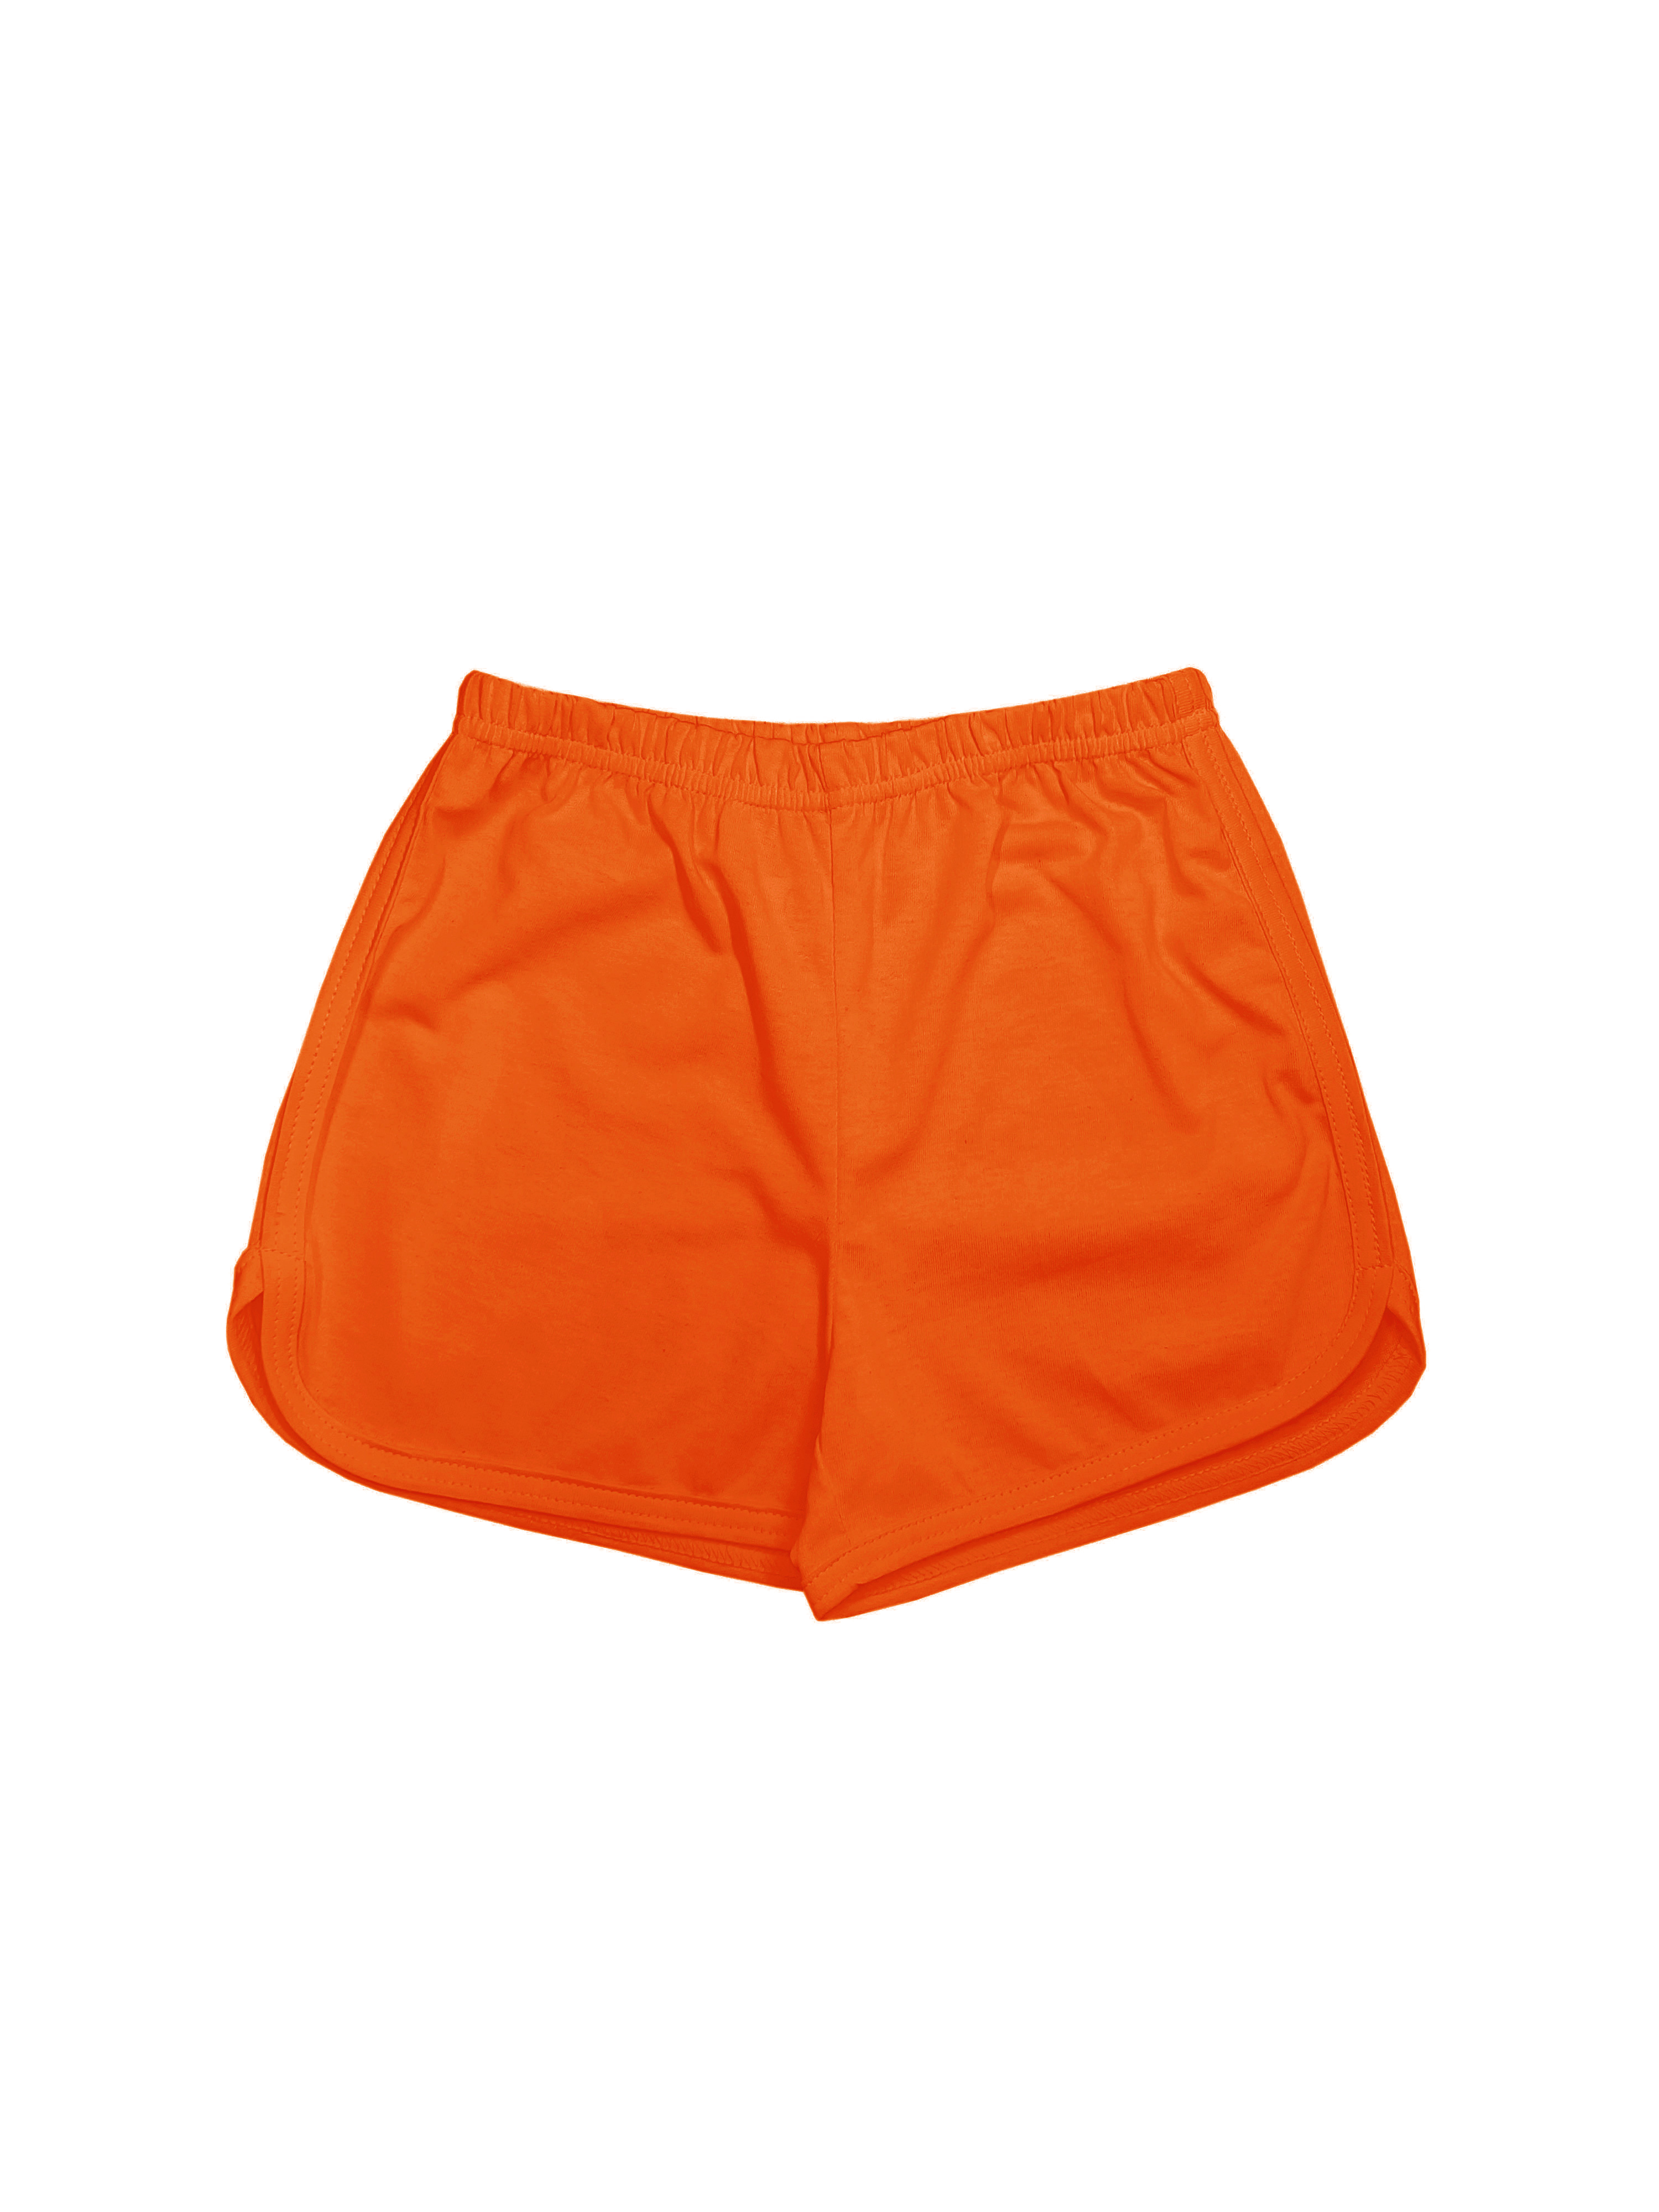 Шорты детские Детрик ШД-0322, Оранжевый, 122 мяч для художественной гимнастики однотонный d19 см пвх agp 19 06 оранжевый с блестками